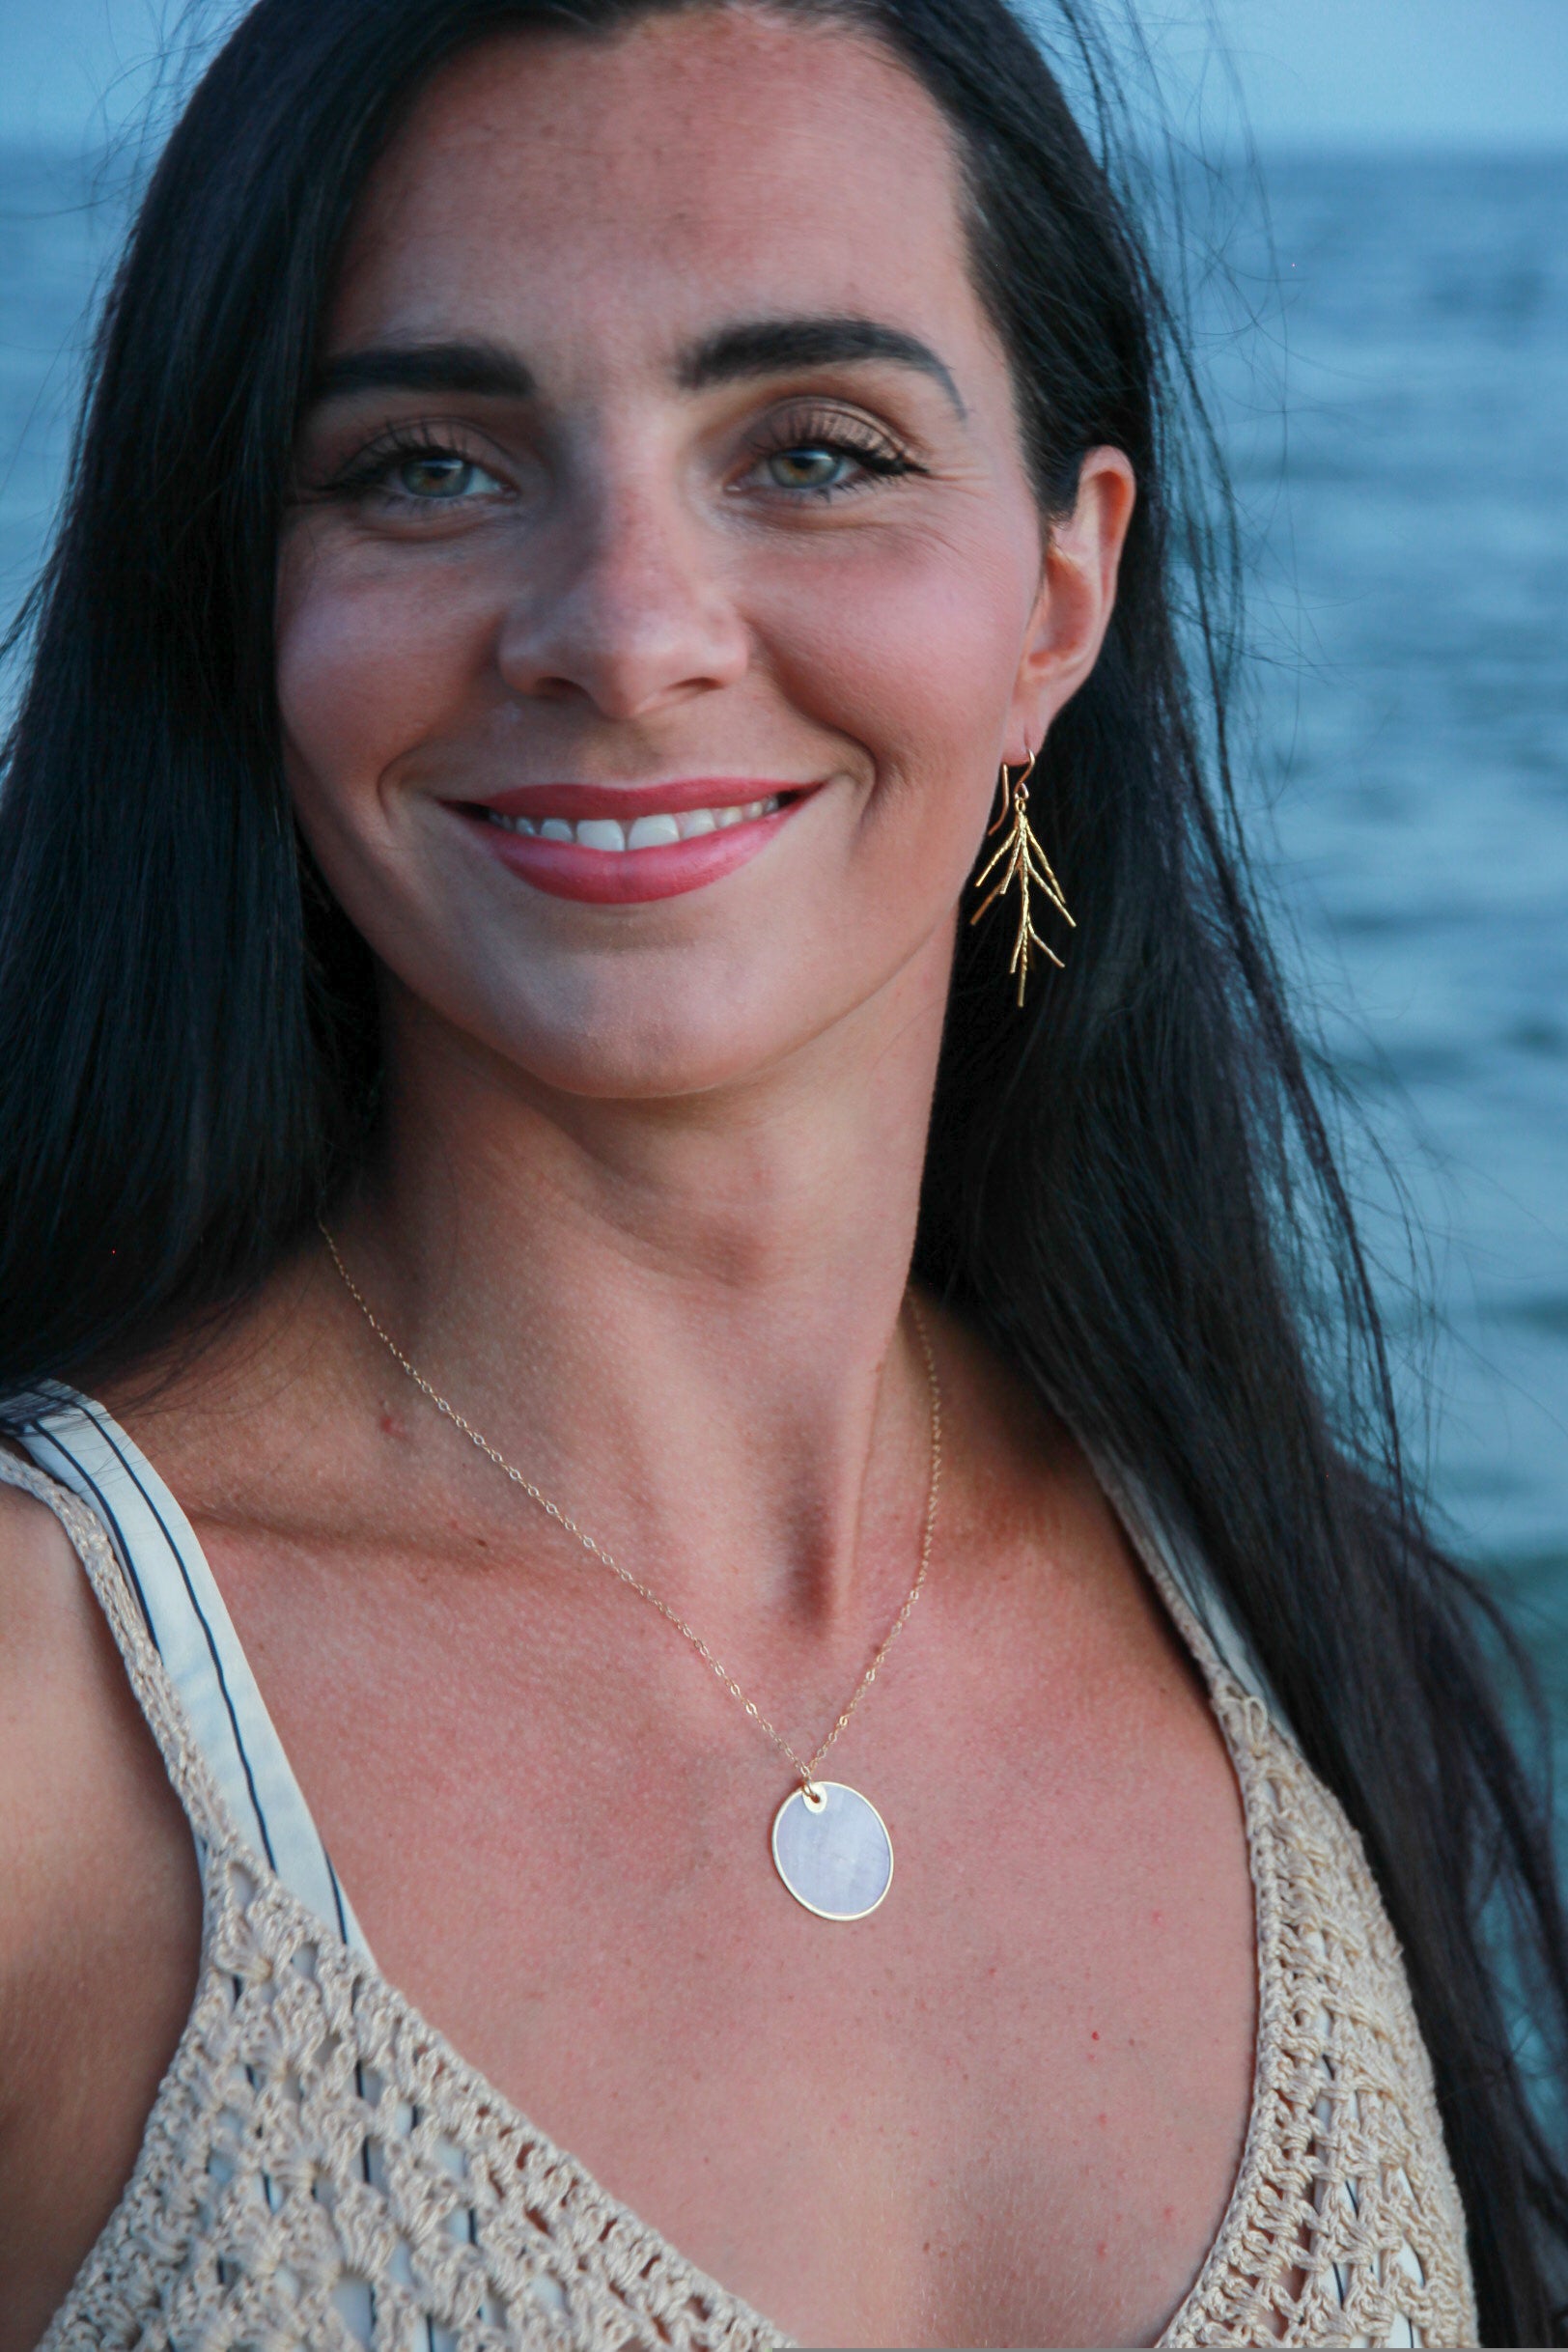 Brass twig earrings shown in a woman's ear on the beach. 